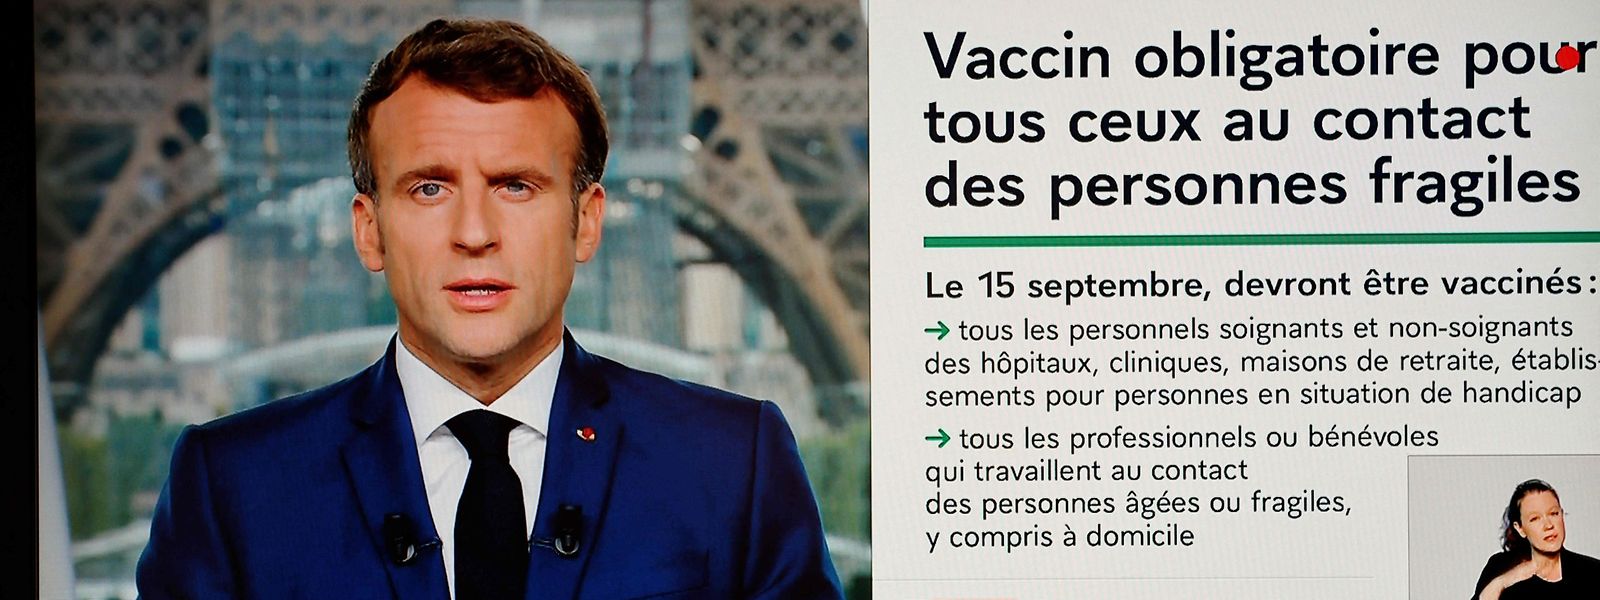 macron impose le vaccin aux soignants francais